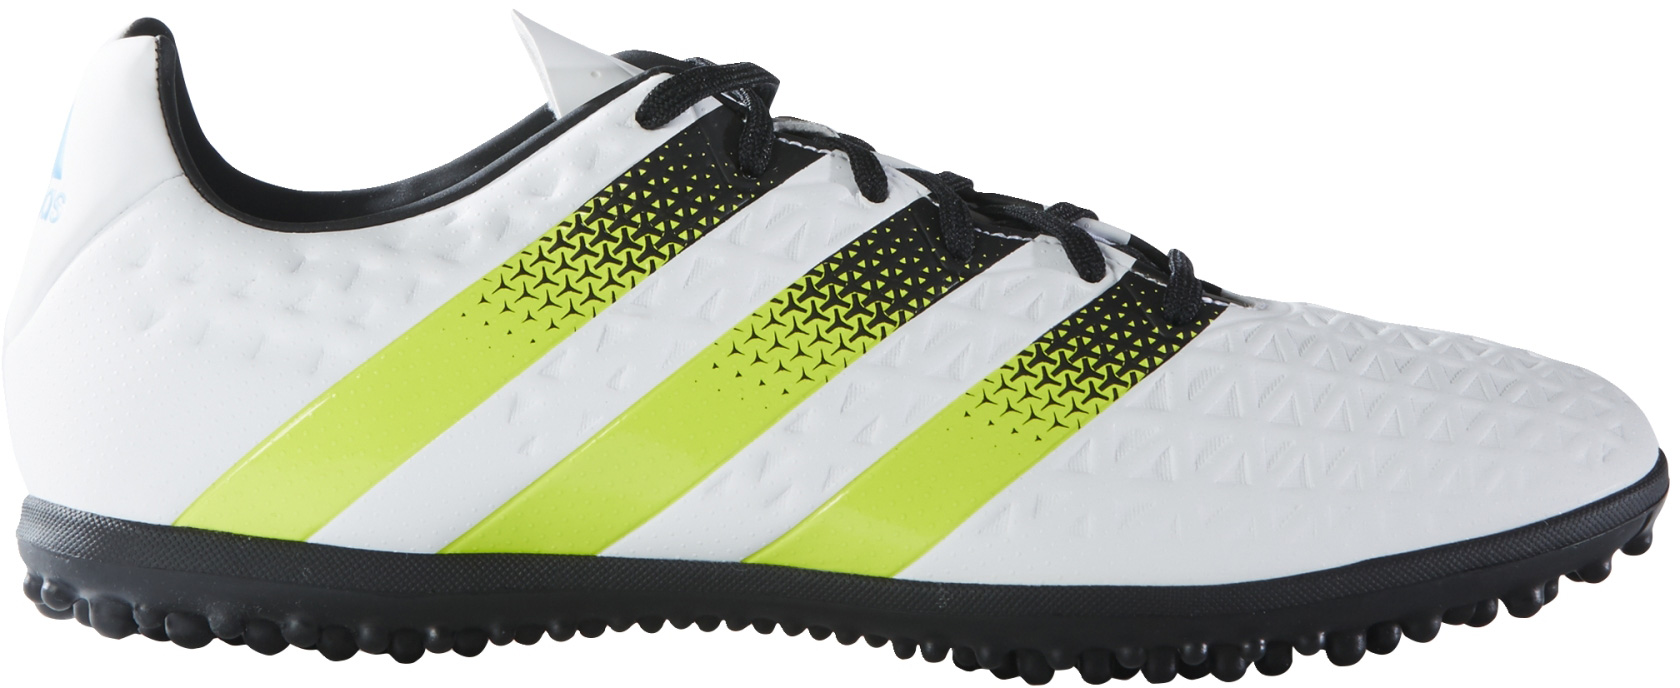 Мъжки футболни обувки adidas